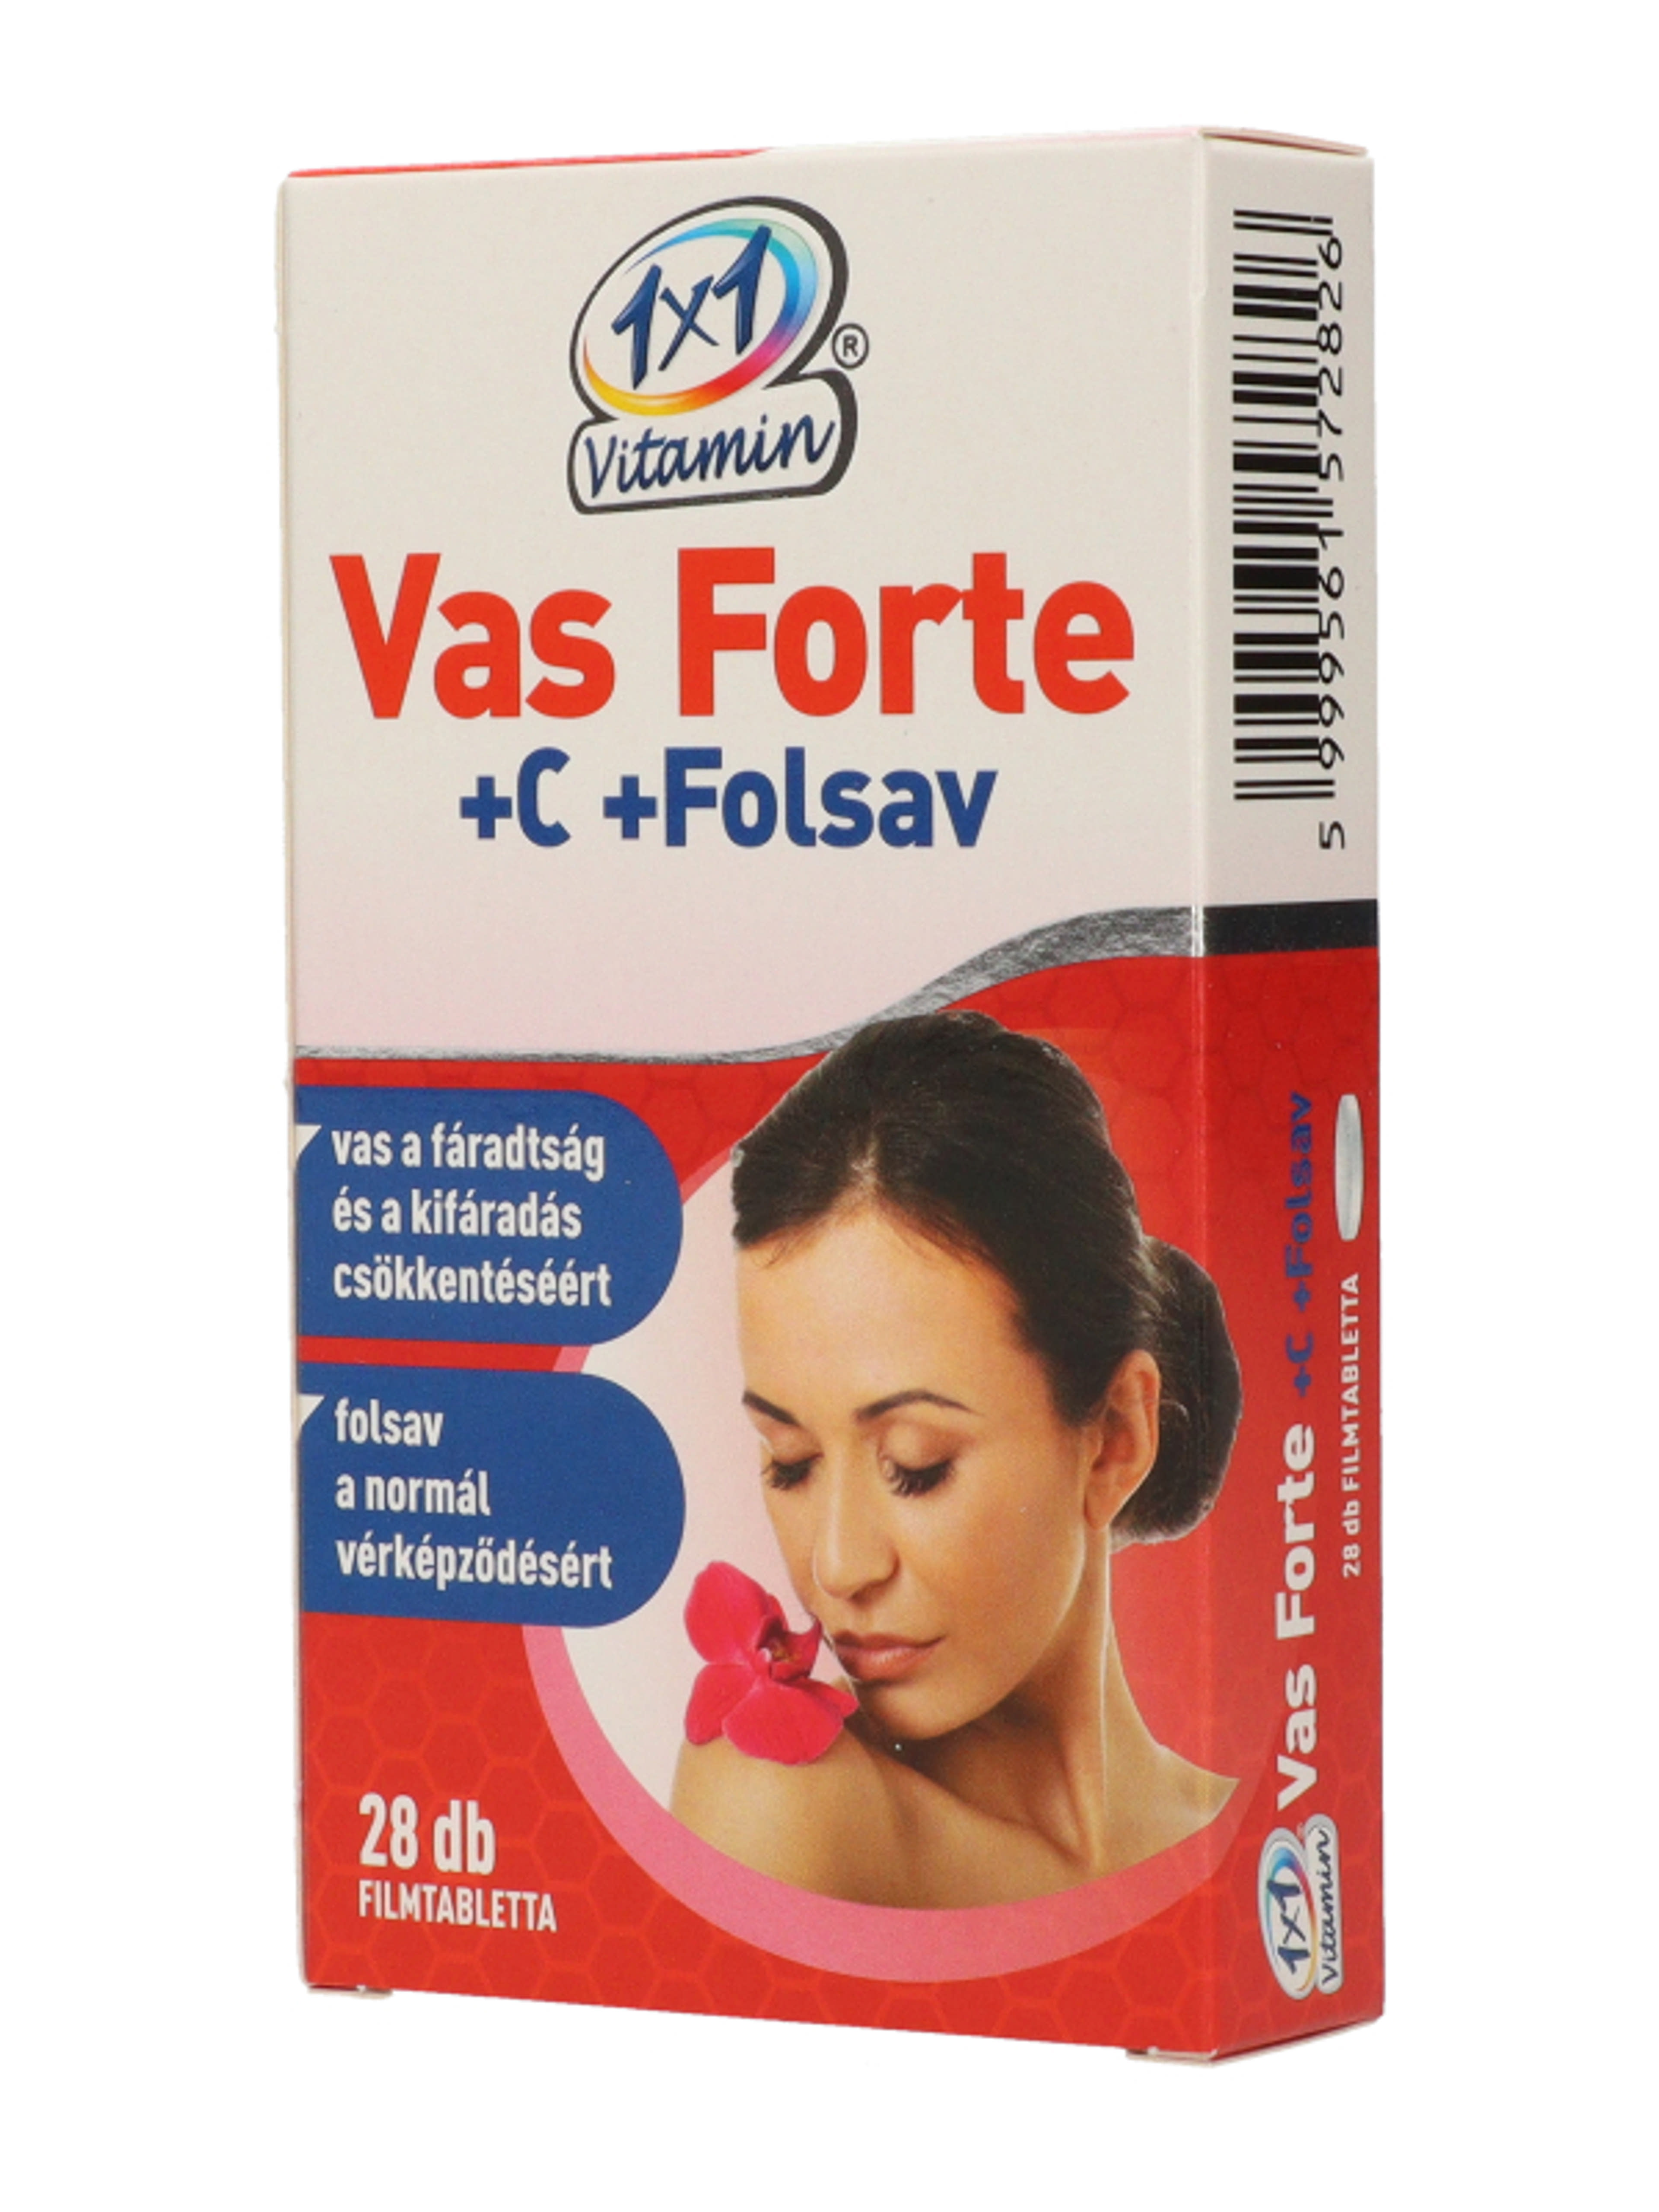 1x1 Vitamin Vas Forte Bioperin 500mg Tabletta - 28 db-3